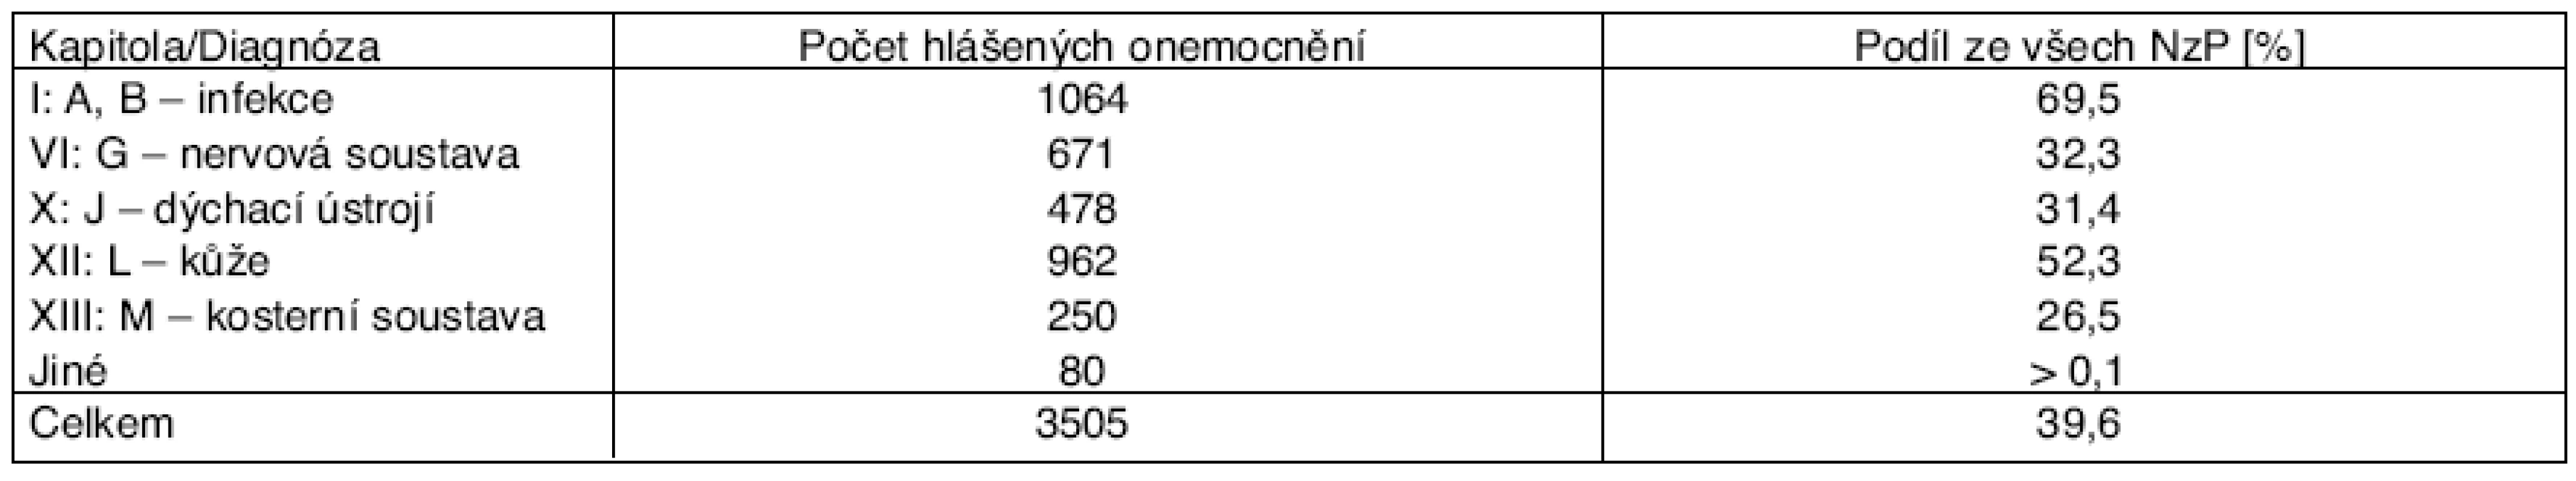 Profesionální onemocnění u žen hlášená v ČR v letech 2001–2006 podle mezinárodní klasifikace nemocí (MKN)